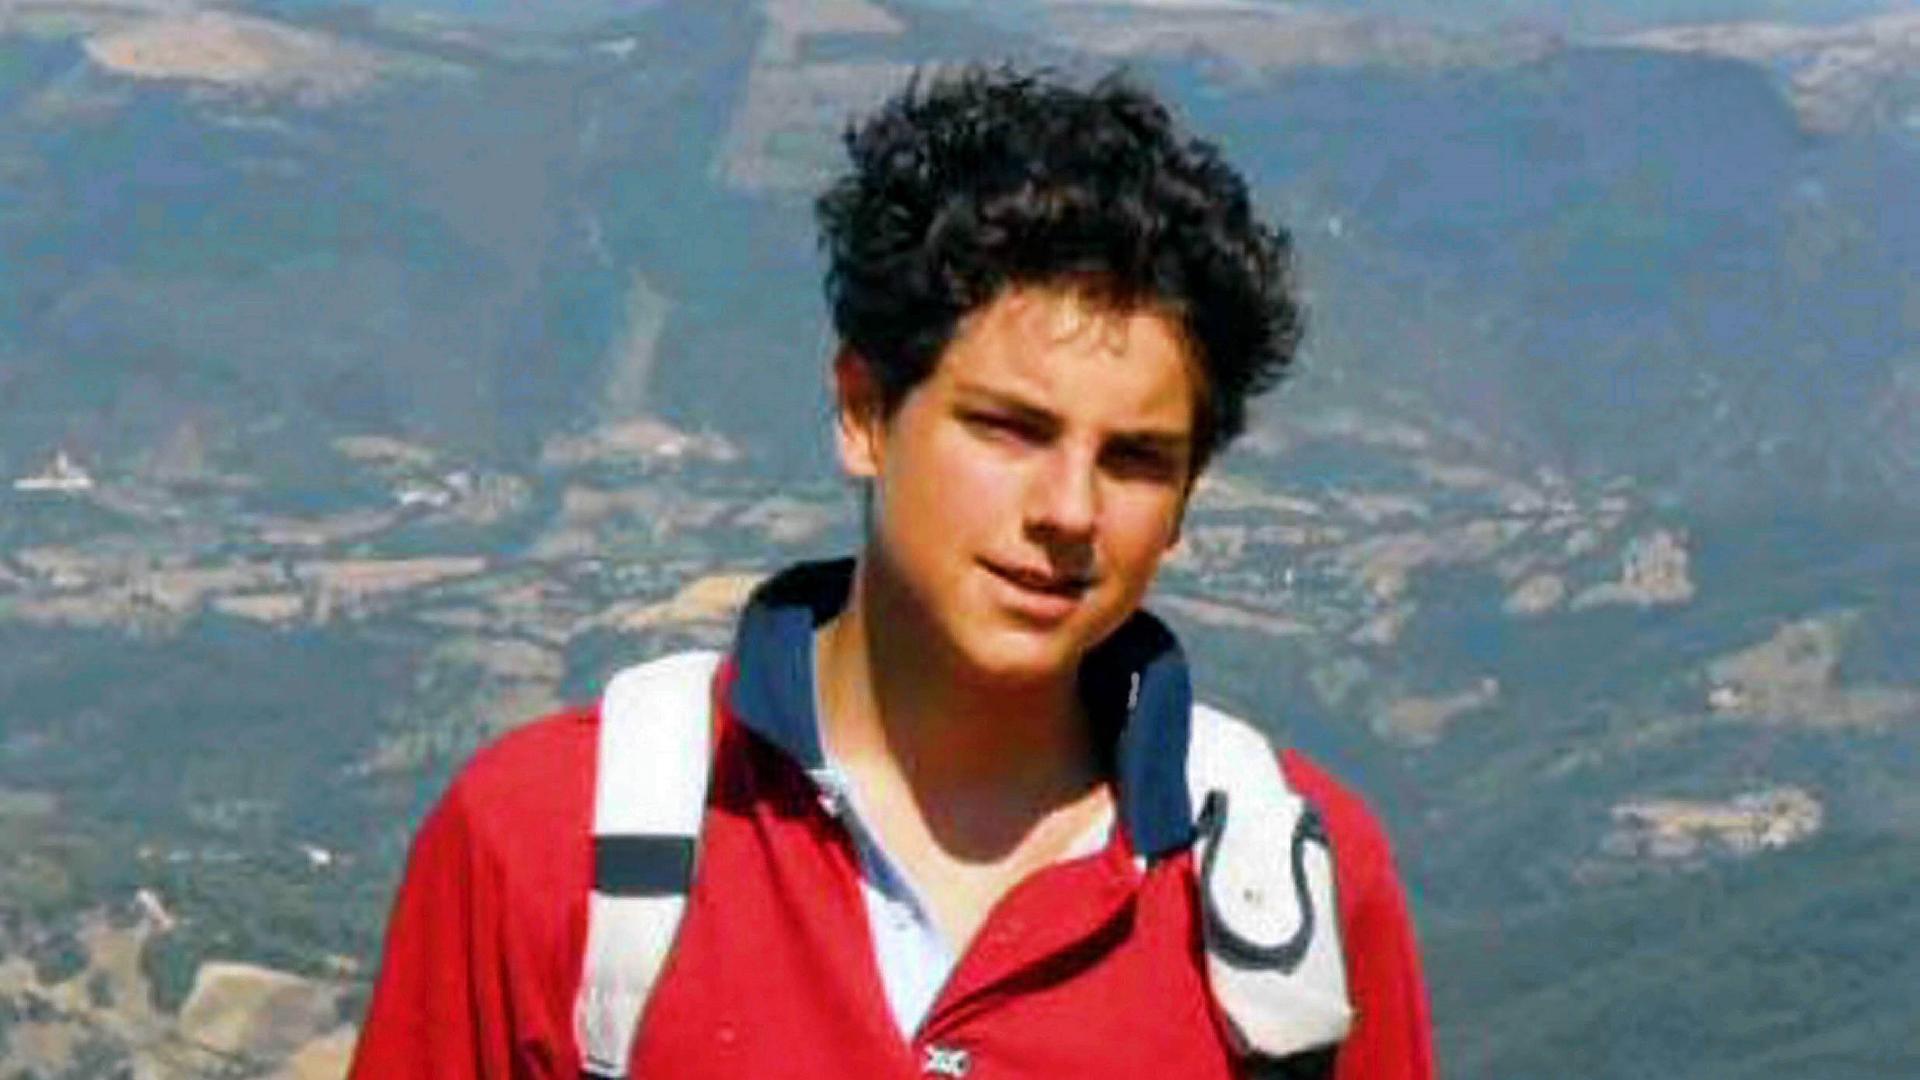 Carlo Acutis, ein Jugendlicher mit Rucksack und dunklen Haaren, steht auf einem Gebirge. 